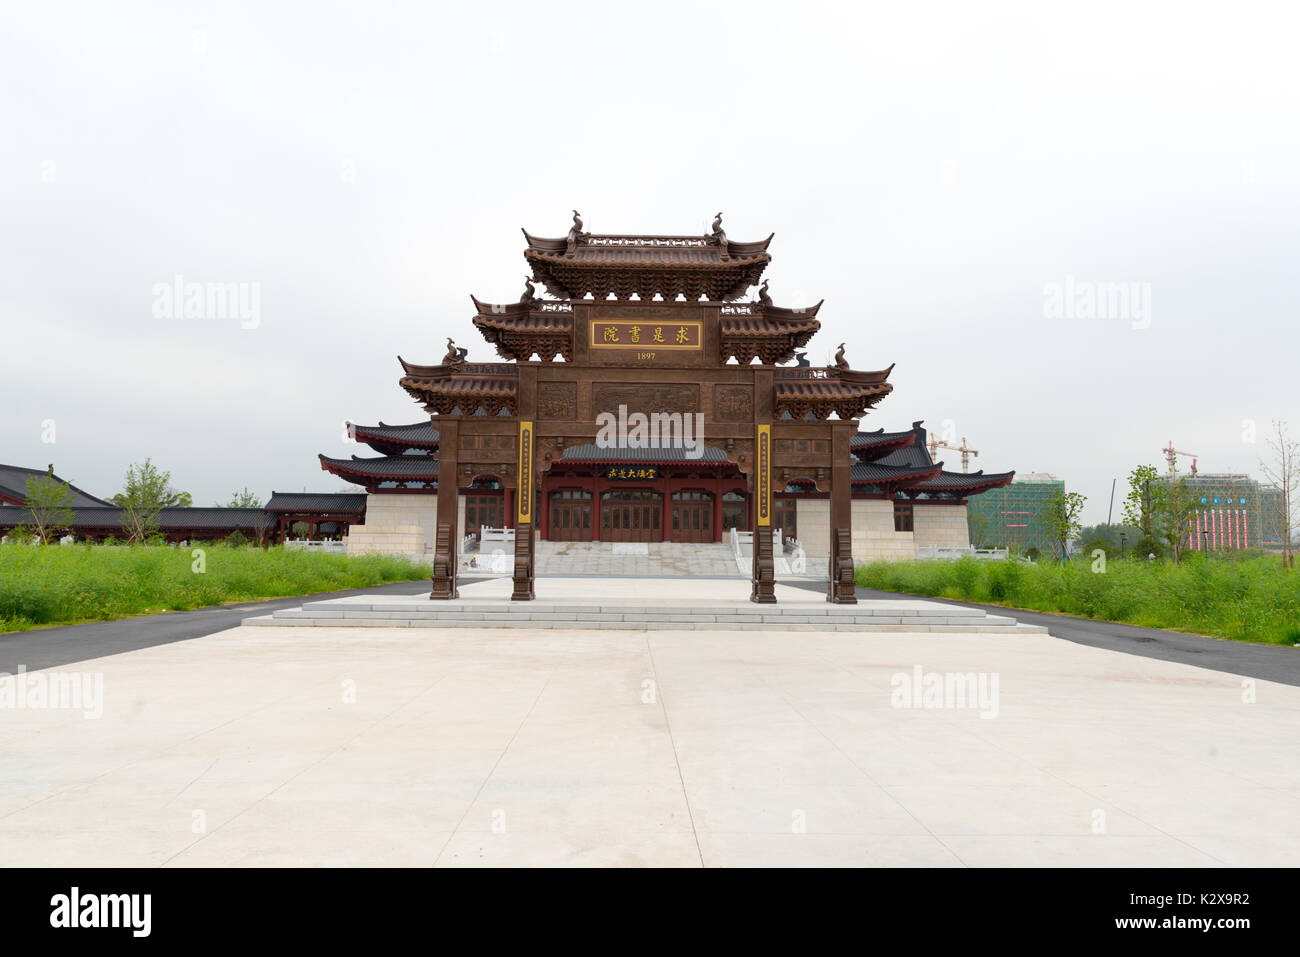 Renovado edificio cultural en China : Campus de la Universidad de Zhejiang Foto de stock